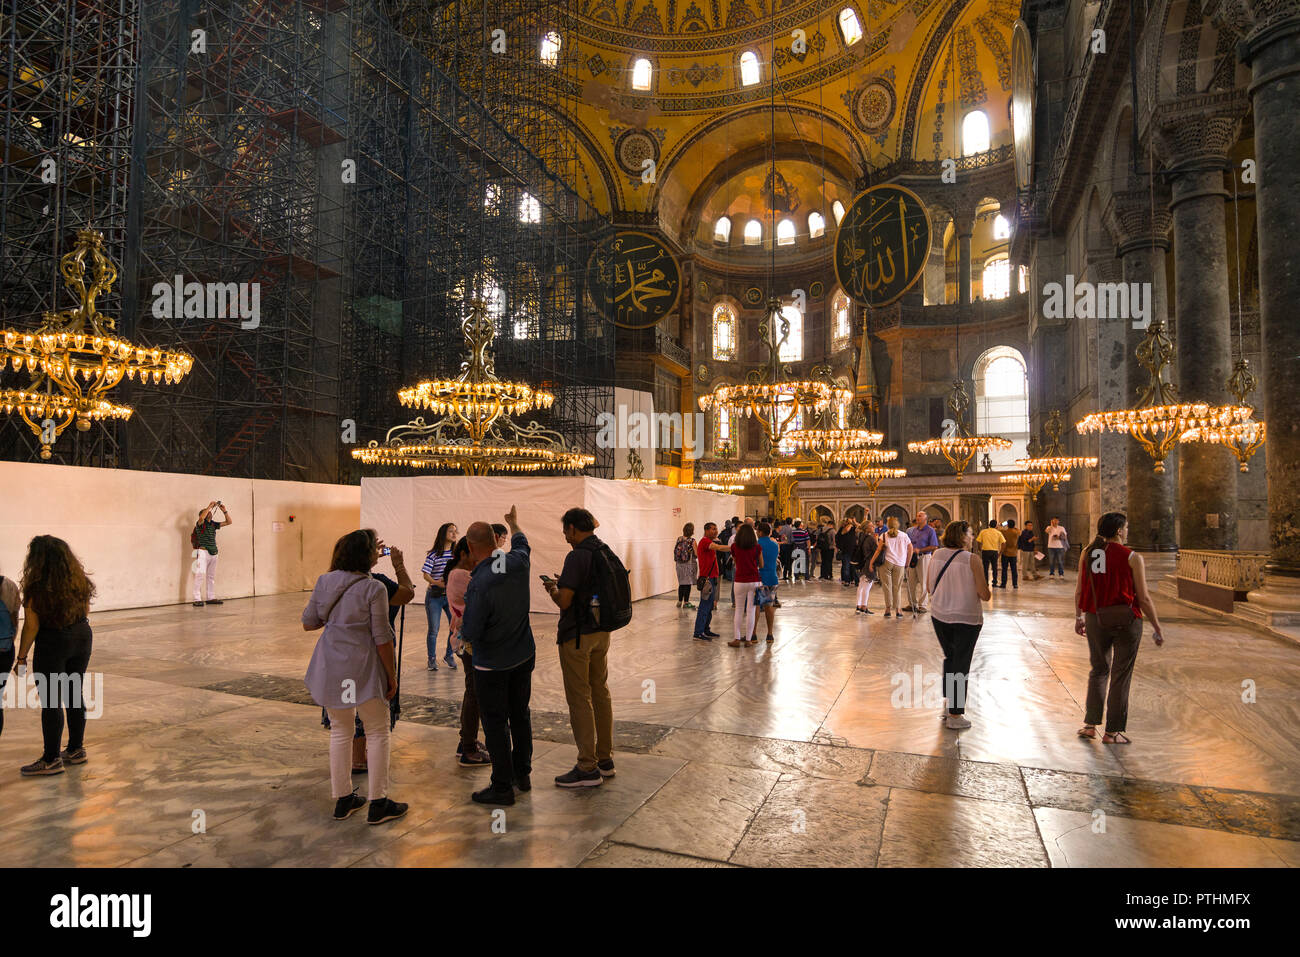 La grande nef principale de l'Hagia Sophia Museum avec les touristes se promènent, rénovation échafaudages bloque un domaine, Istanbul, Turquie Banque D'Images